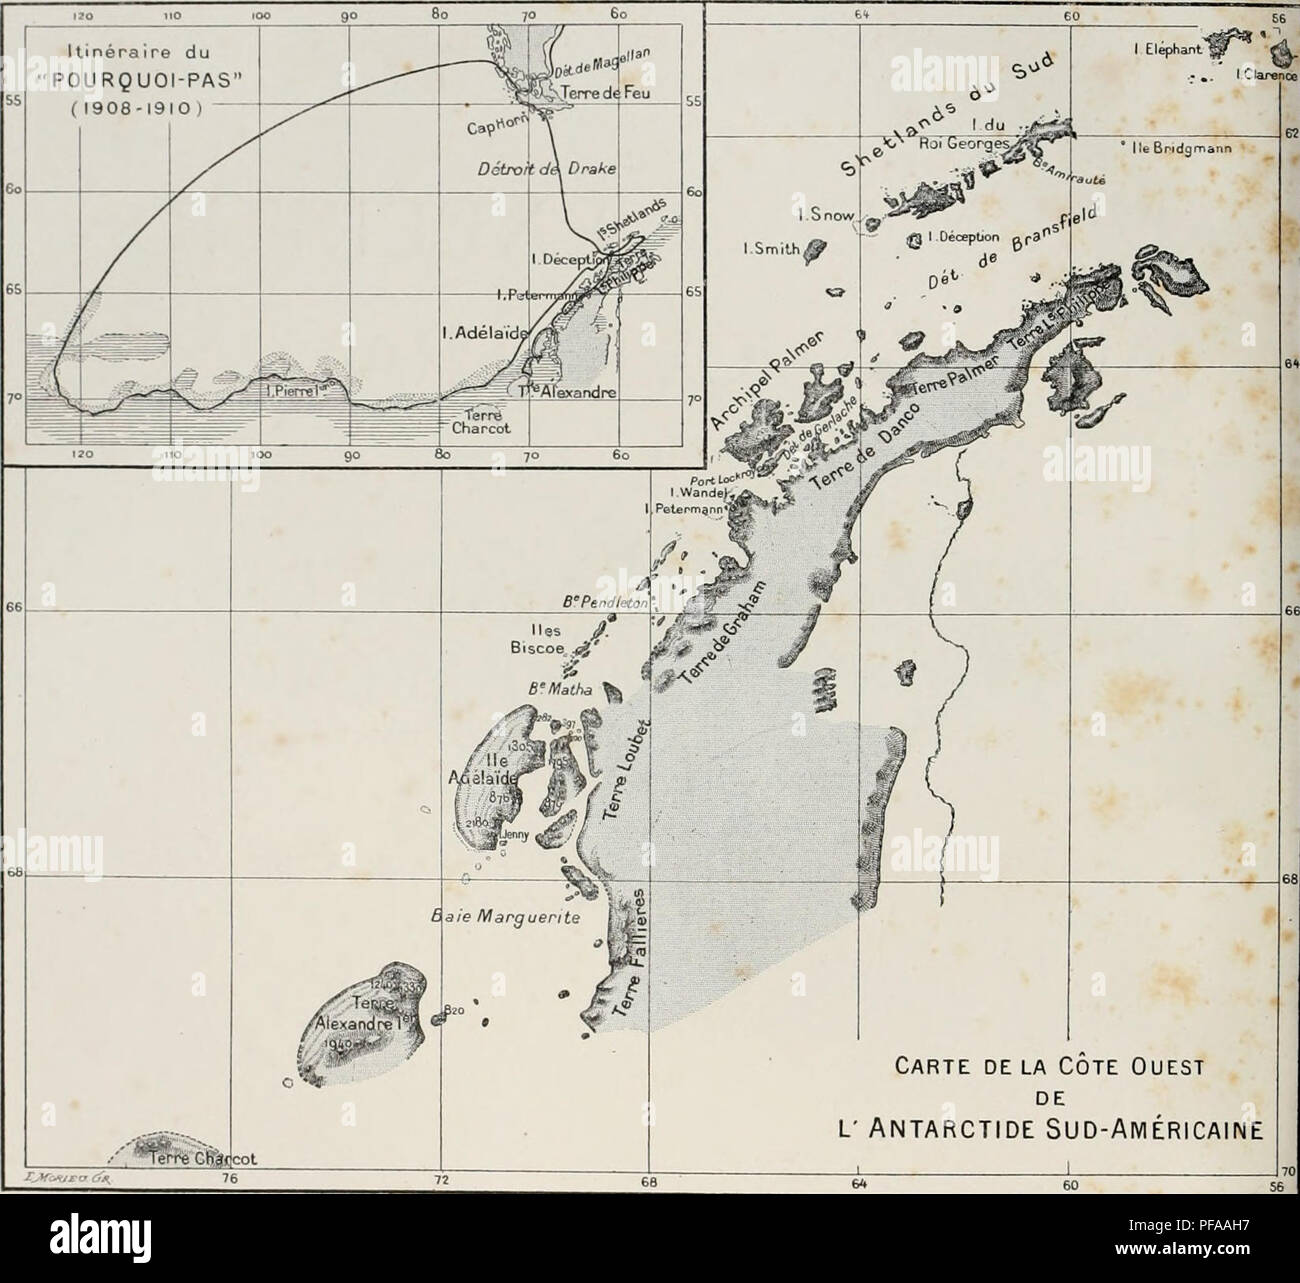 . ¨ me DeuxiÃ expÃ©dition antarctique francaise (1908-1910). Histoire naturelle -- Antarctique ; expéditions scientifiques -- Antarctique ; l'Antarctique. Carte delÃ Cote Ouest DE L' ANTARCTIDE SUD-AMÃRICAINE CARTE DES RÃGIONS ET PARCOURUES PAR L'EXPÃDITION RELEVÃES MEMBRES DE LETAT MAJOR " POURQUOI PAS " J.-B. M. CHARCOT Hydrographie BONGRAIN, Sismographie, la gravitation terrestre, les observations astronomiques. L. CiAIN Zoologie (Spongiaires, Echinodermes. Arthropodes. Oiseaux et cial&amp ; parasites) plancton, Botanique. R.-E. GODFROY María©es, Tofographie côte tiÃ¨re. Chimie de Tair. E. GOURDON ... . Banque D'Images